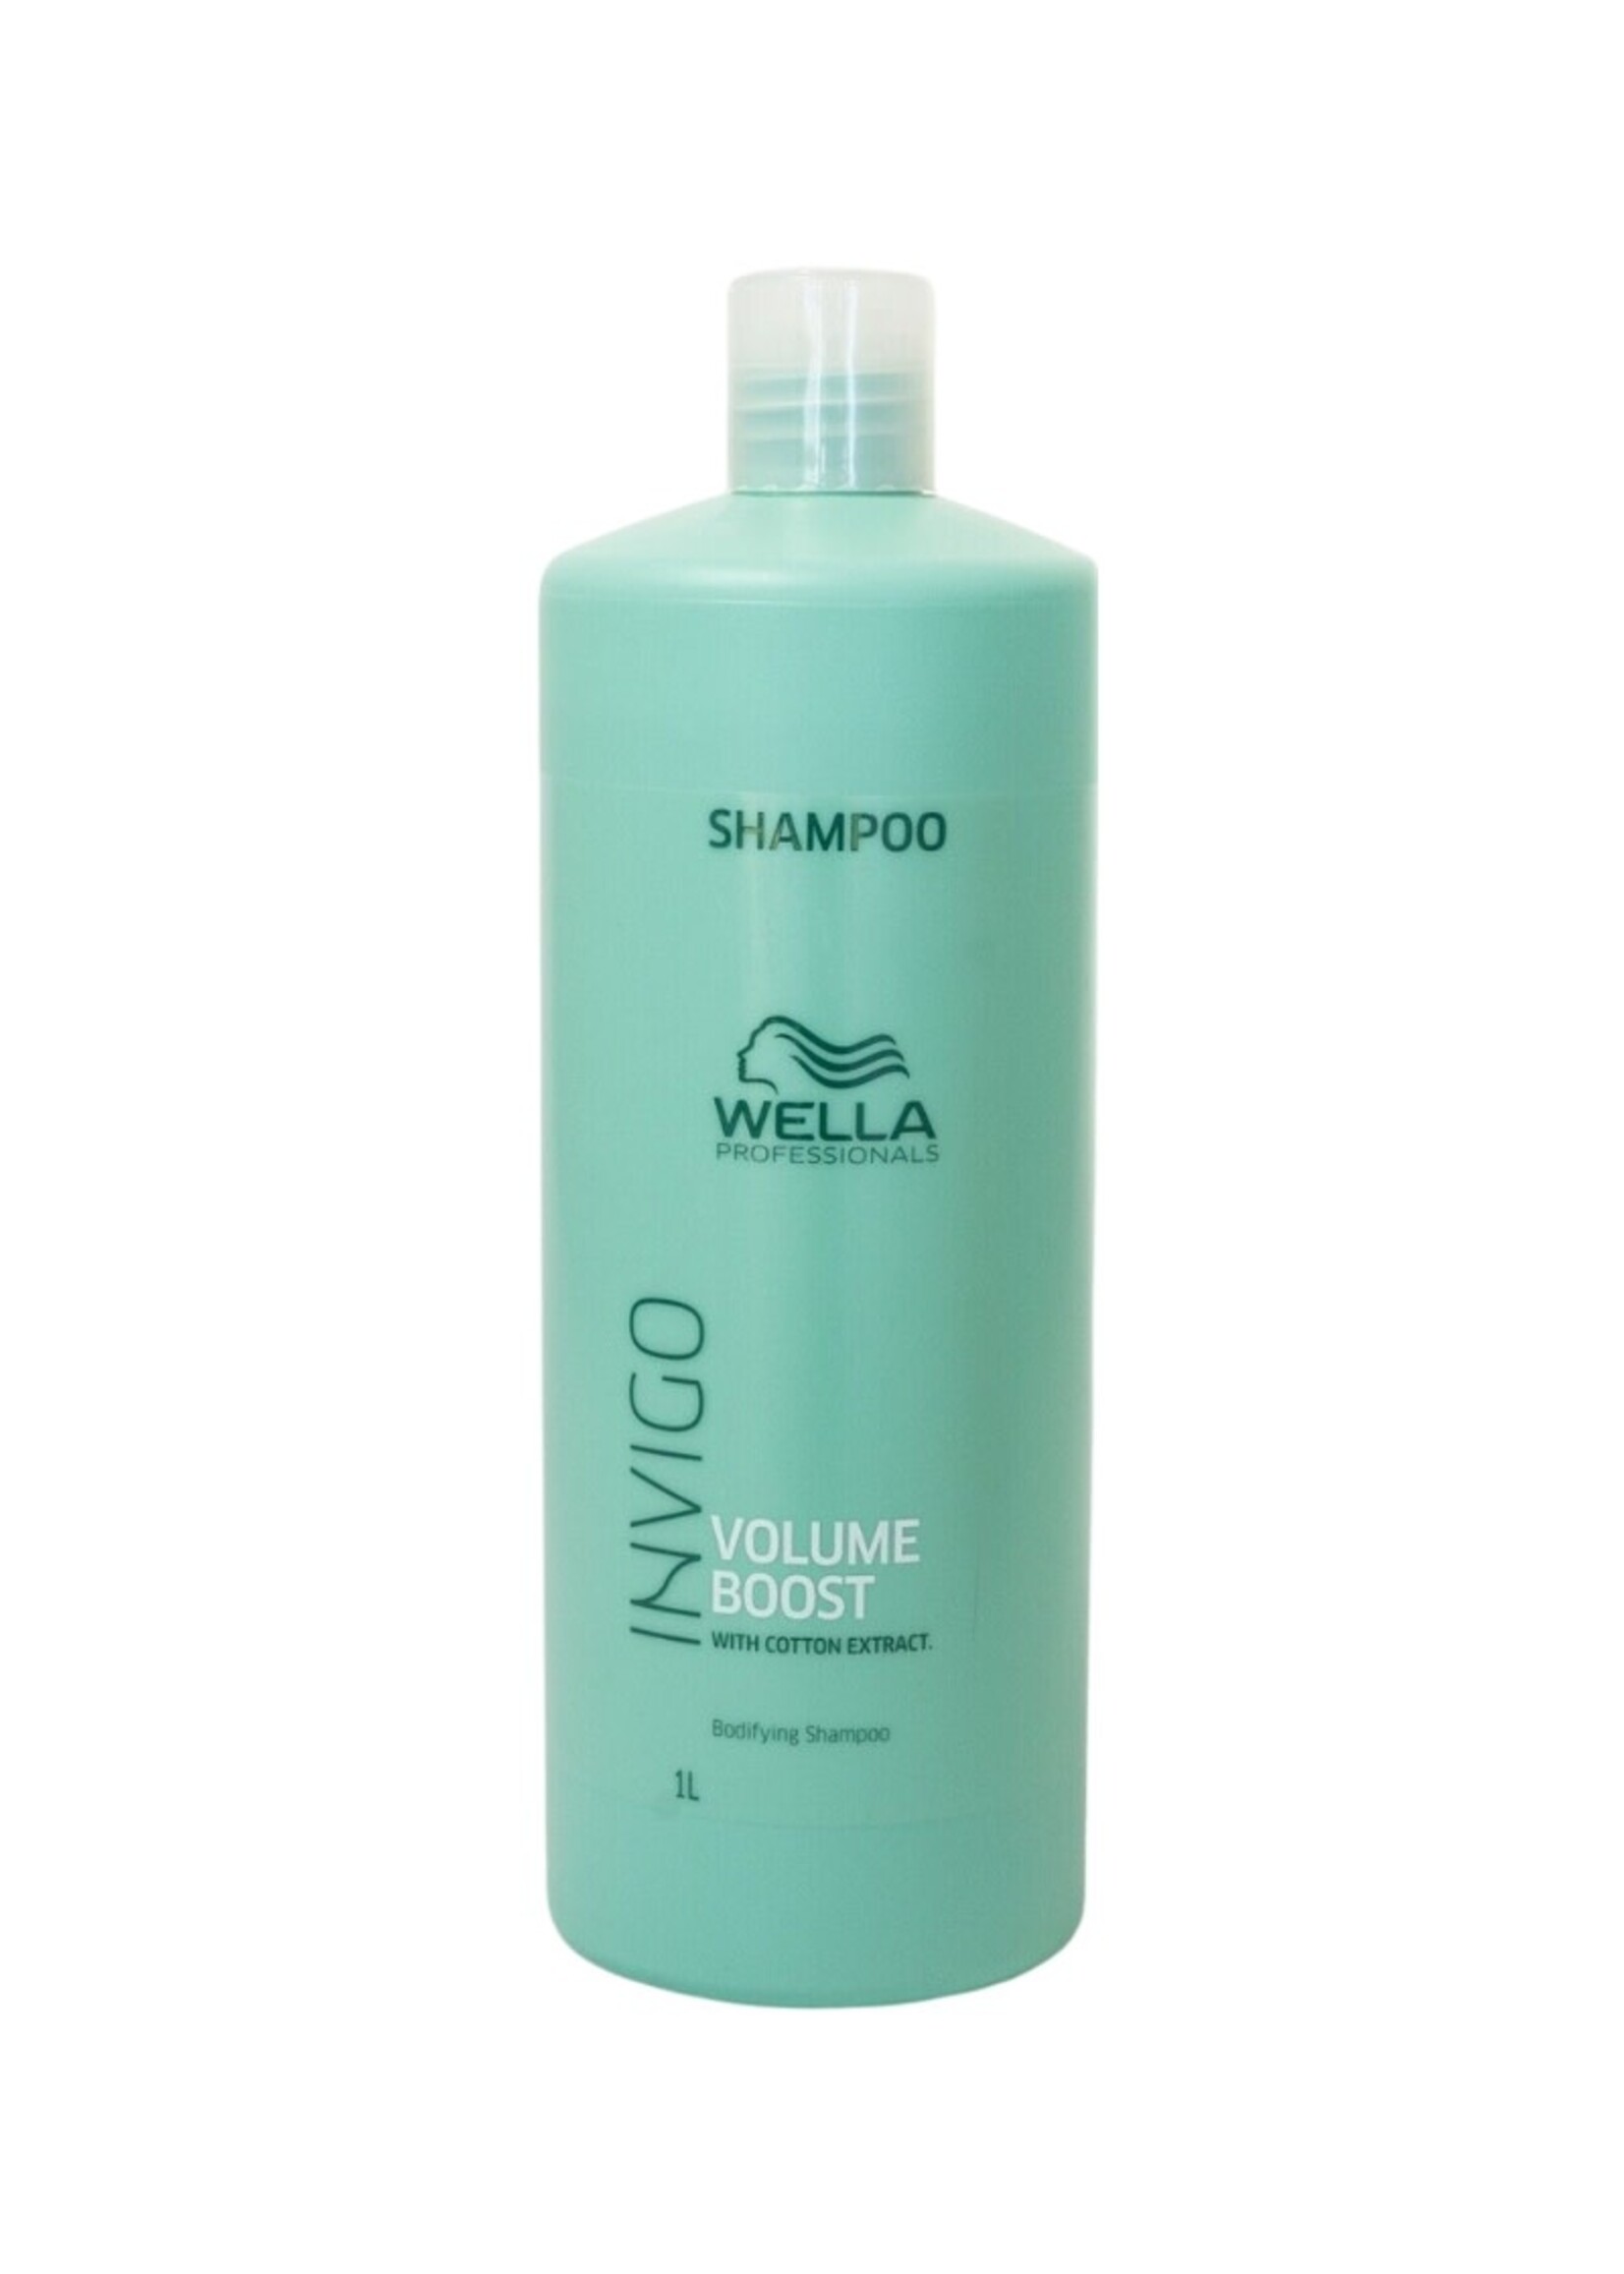 Wella Wella Invigo Volume Boost Bodifying Shampoo 1L